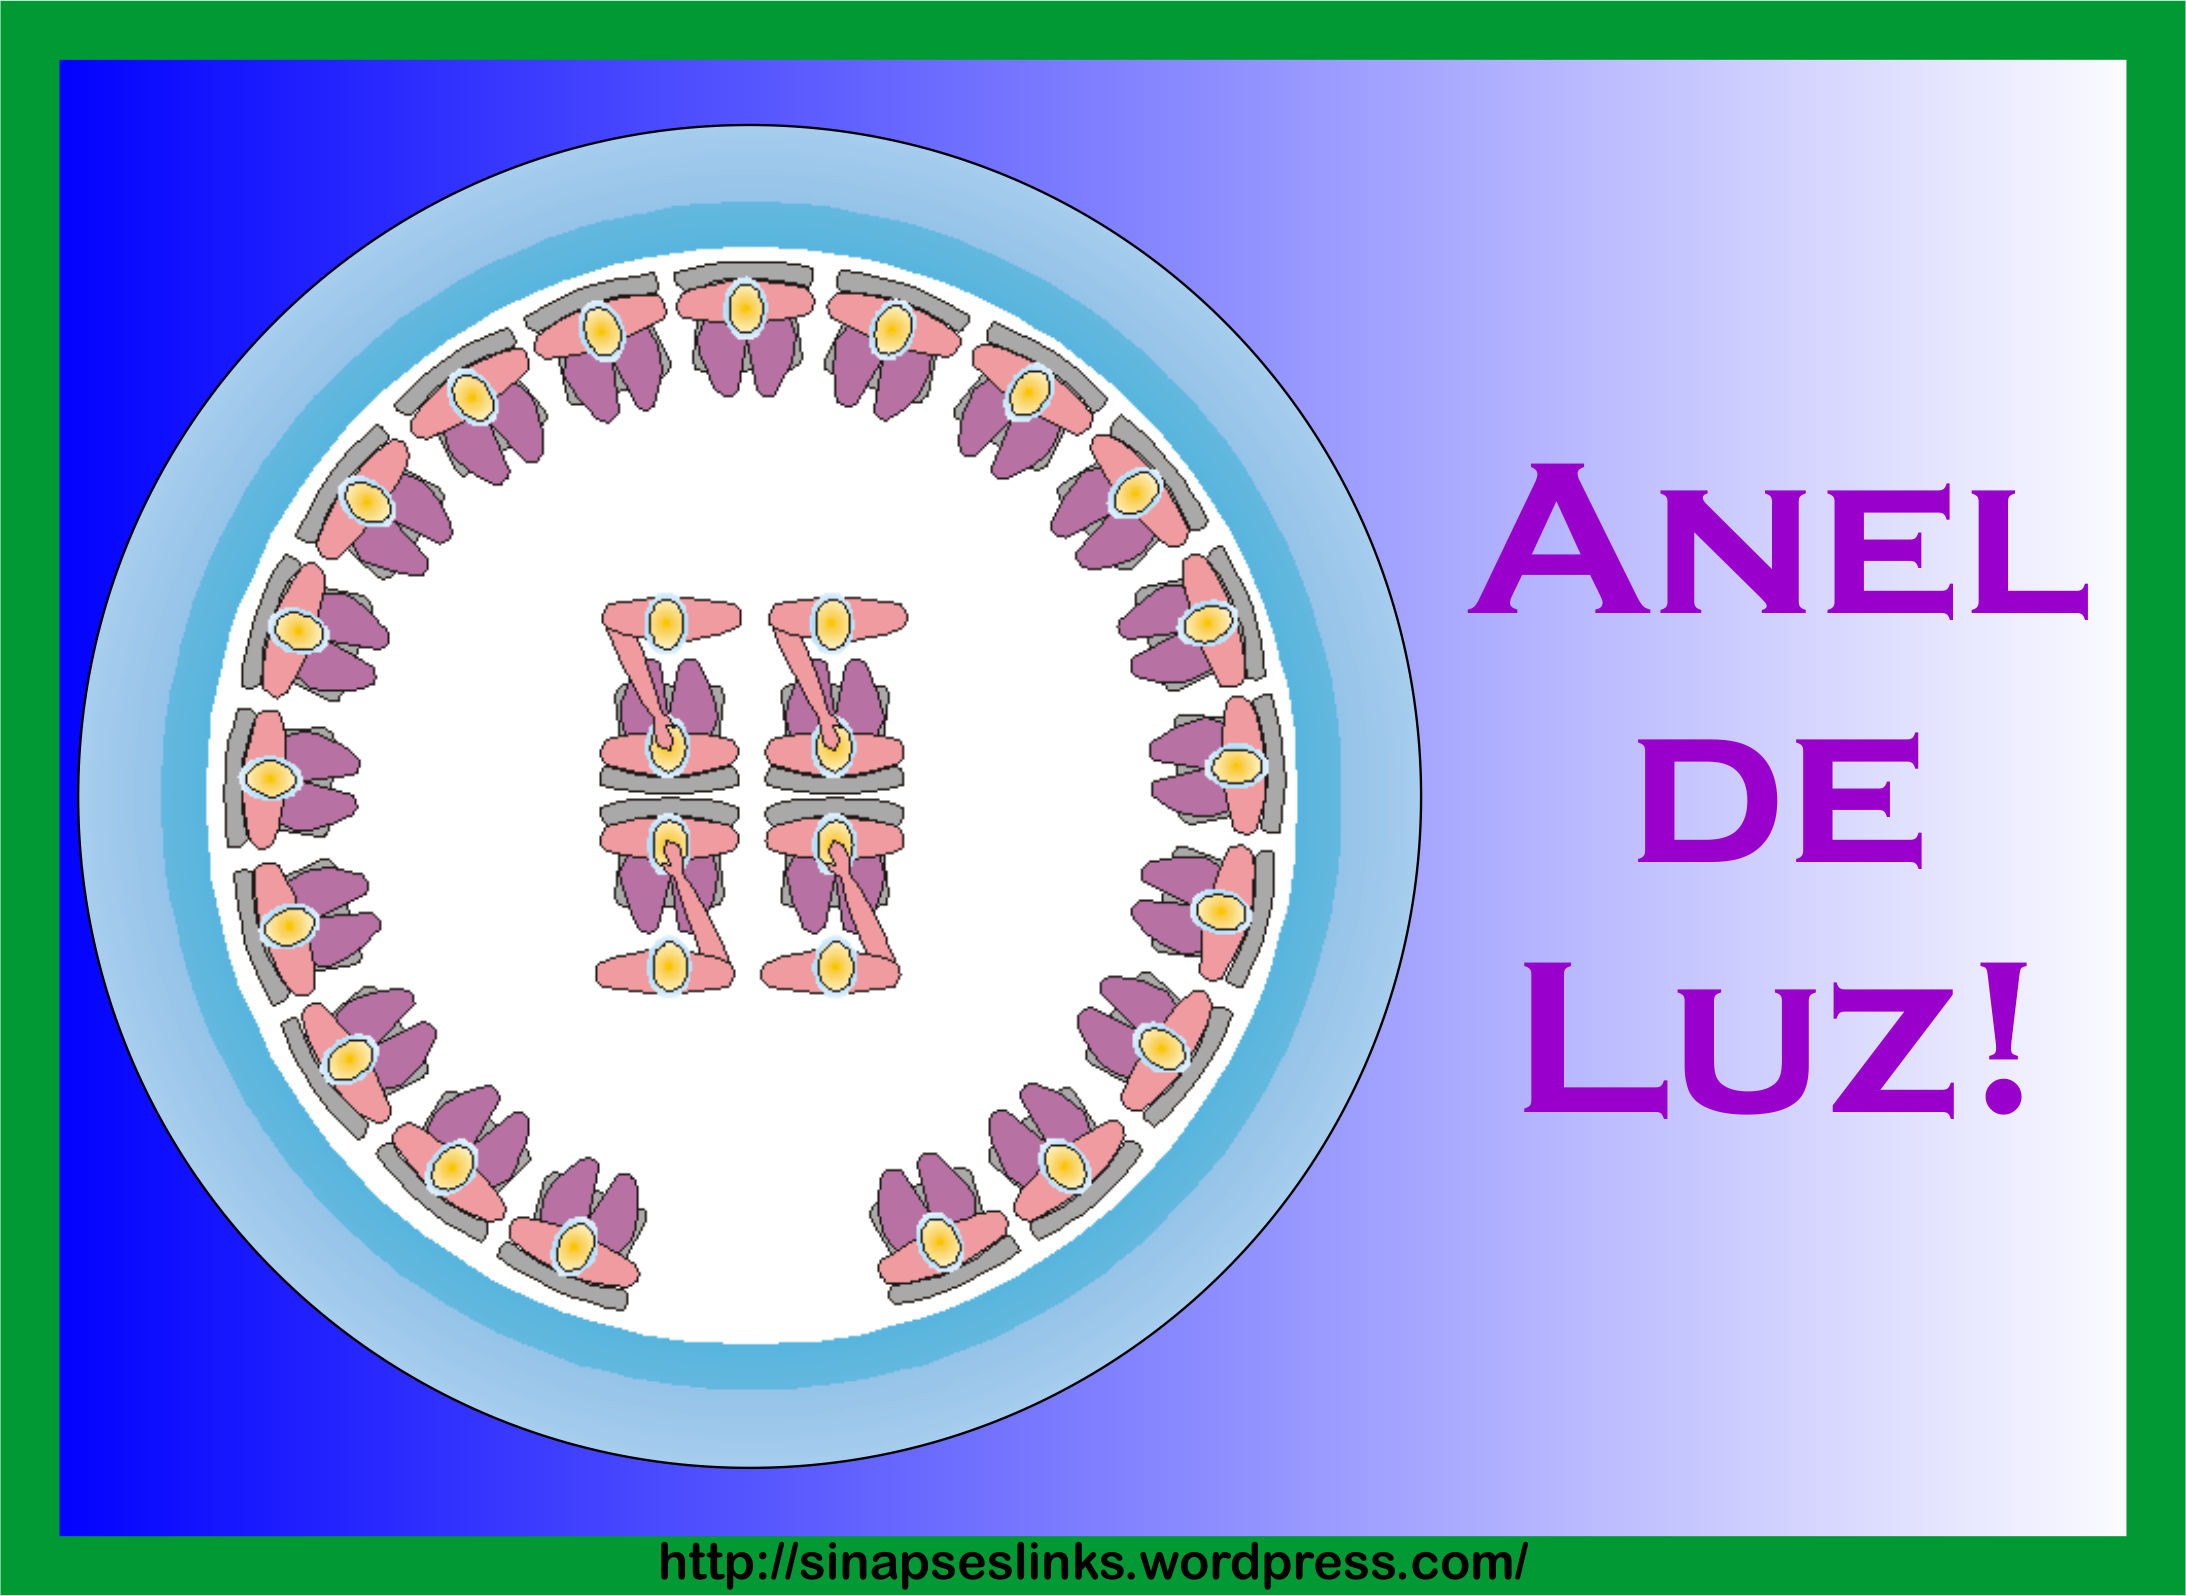 20130116_Anel_Luz